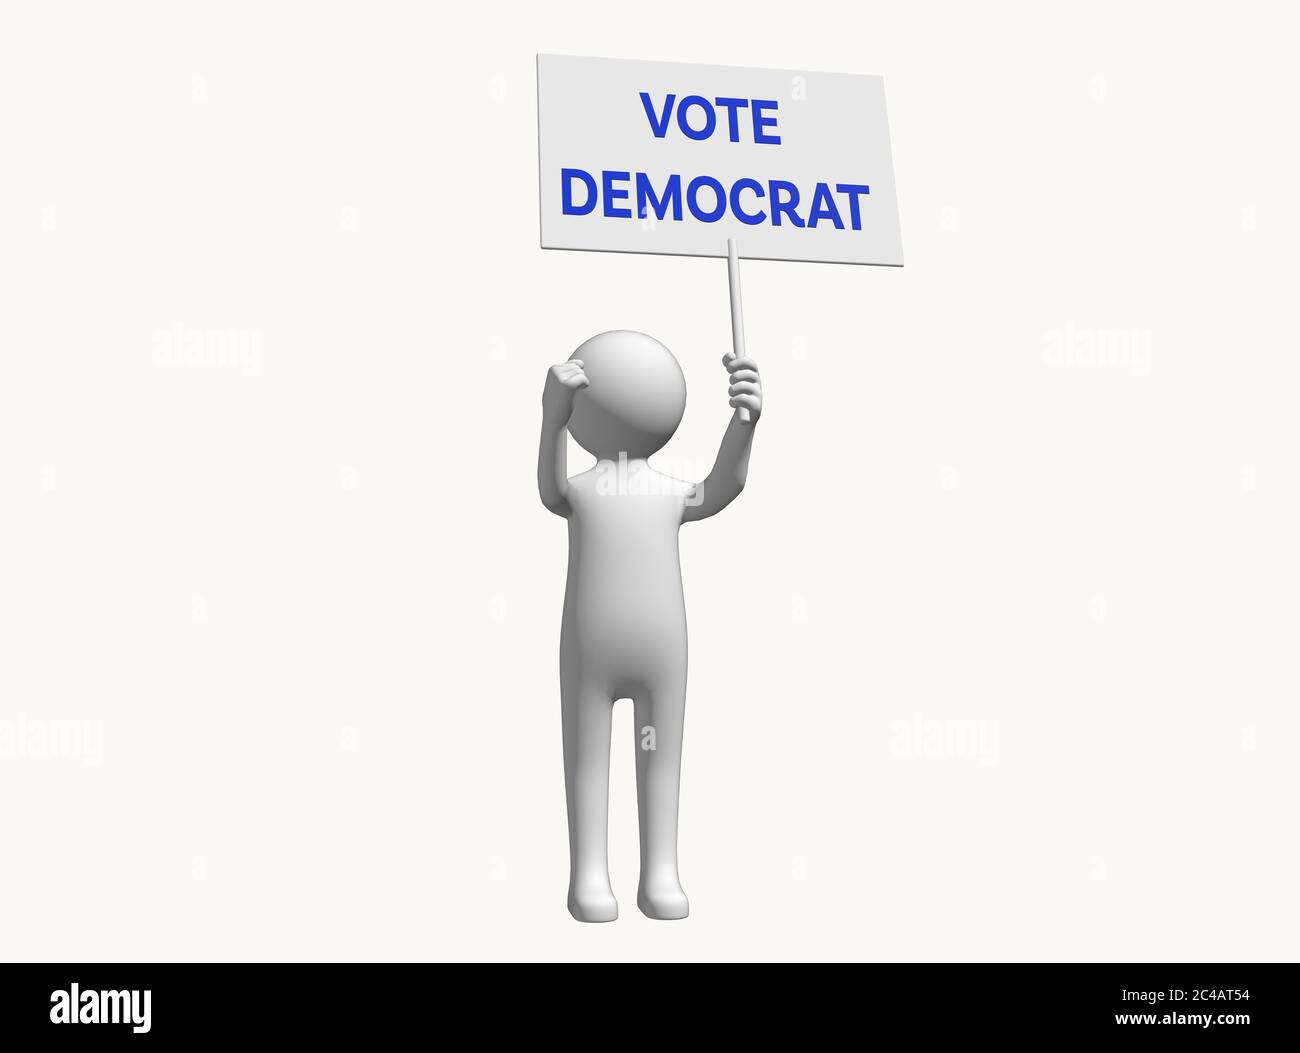 Personnage anonyme en 3D avec signe de soutien vote démocrate vote démocrate vote démocrate écriteau démocrate vote démocrate choix de vote Banque D'Images